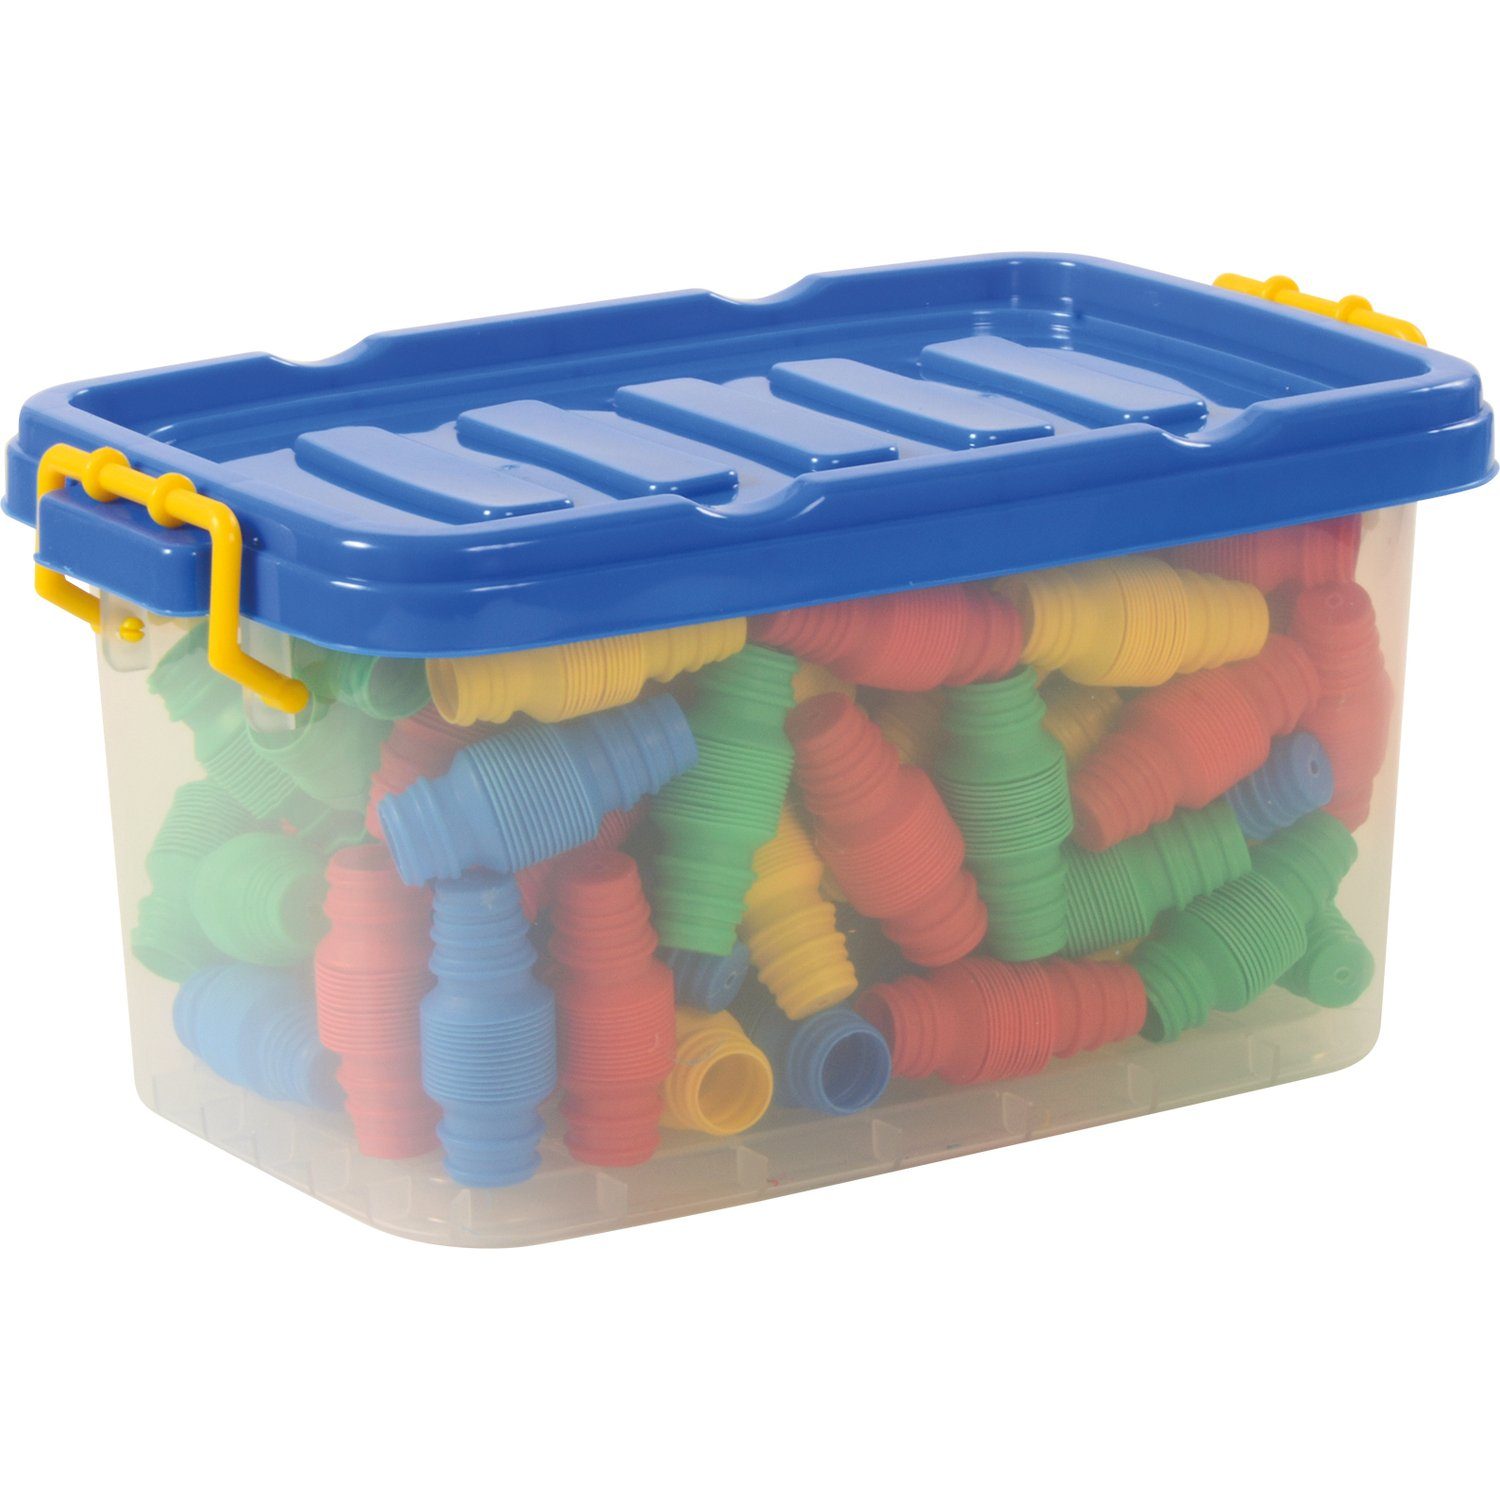 EDUPLAY Lernspielzeug Flexröhrenset, Kunststoff, inklusive Box